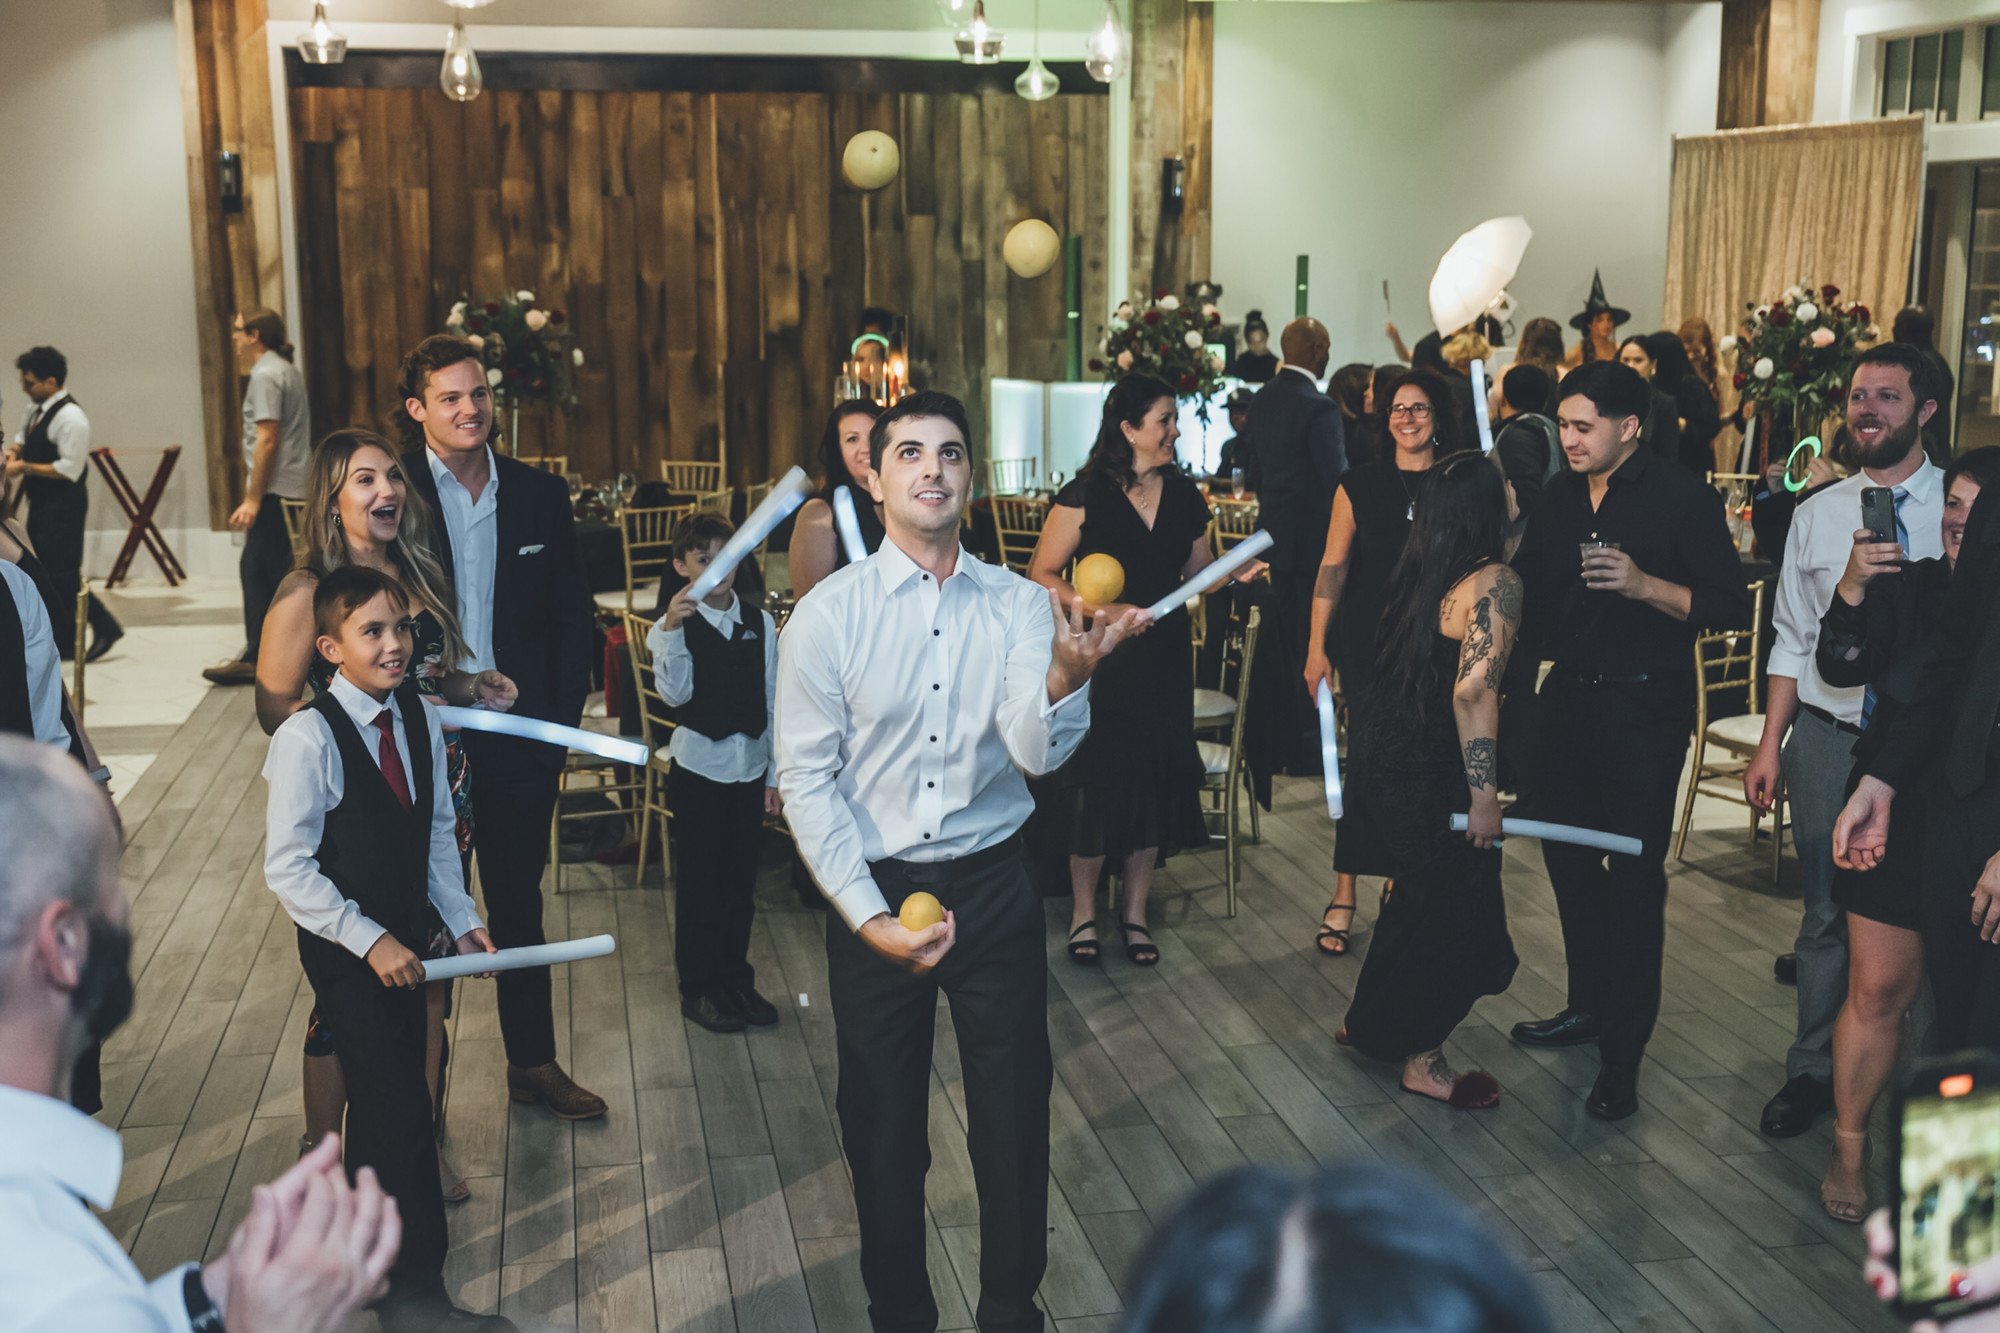 Bow Tie Photo & Video groom juggling on the dance floor in St. Augustine, FL.jpg